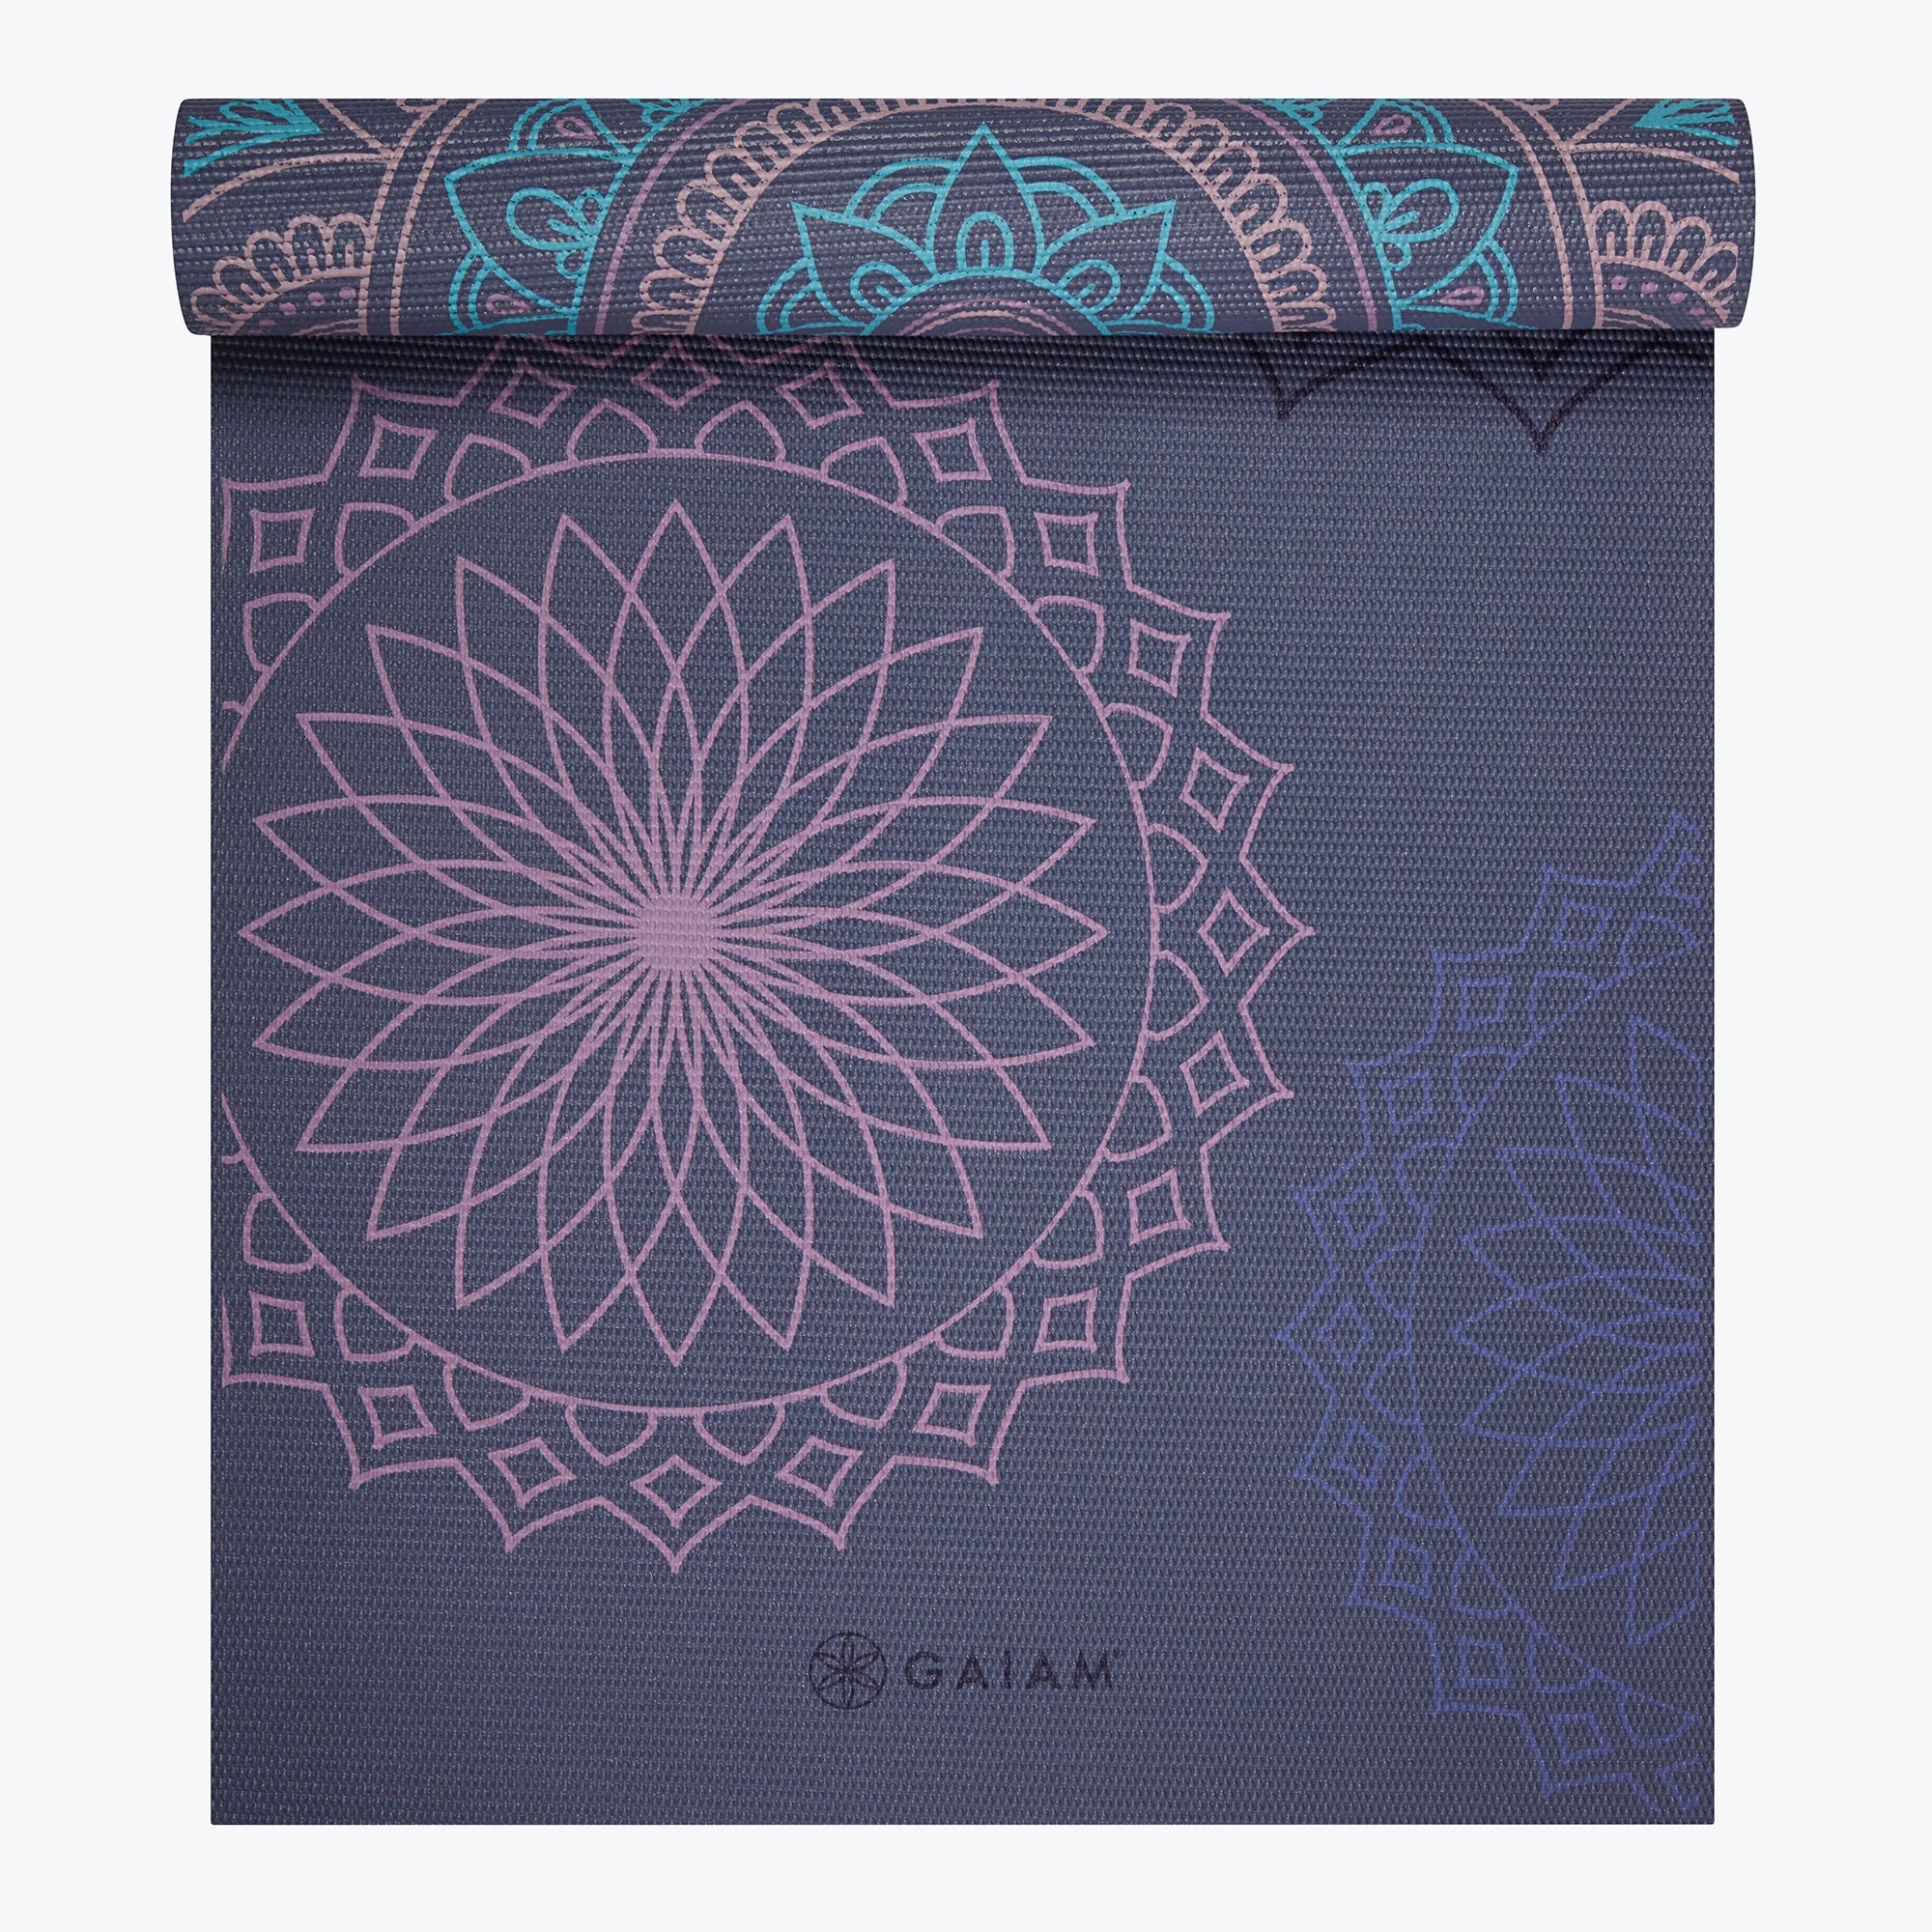 Purpose Printed Yoga Mat - Sun Salutation (6MM) –